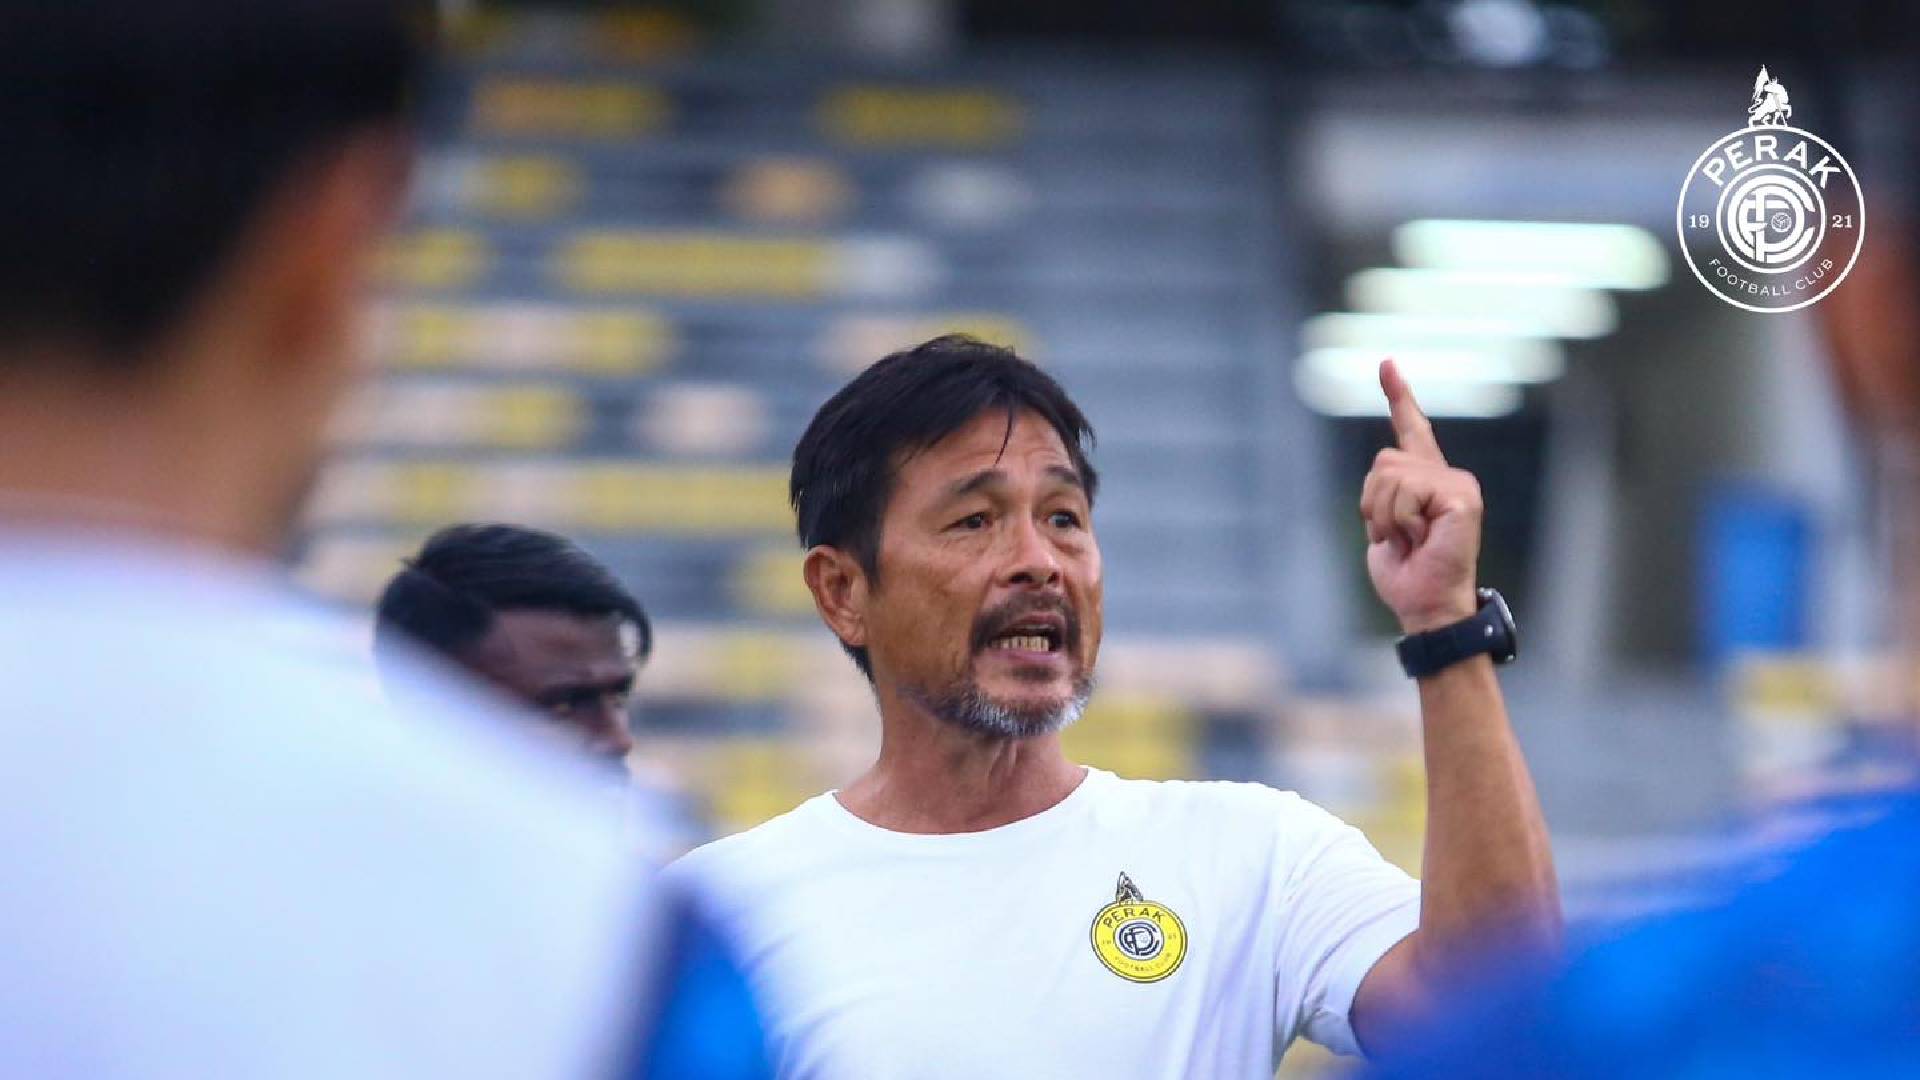 Datuk Lim Teong Kim Perak FC 1 1 Wartawan Jerman Akui Kehebatan Lim Teong Kim Kenal Pasti Bakat Bintang Dunia